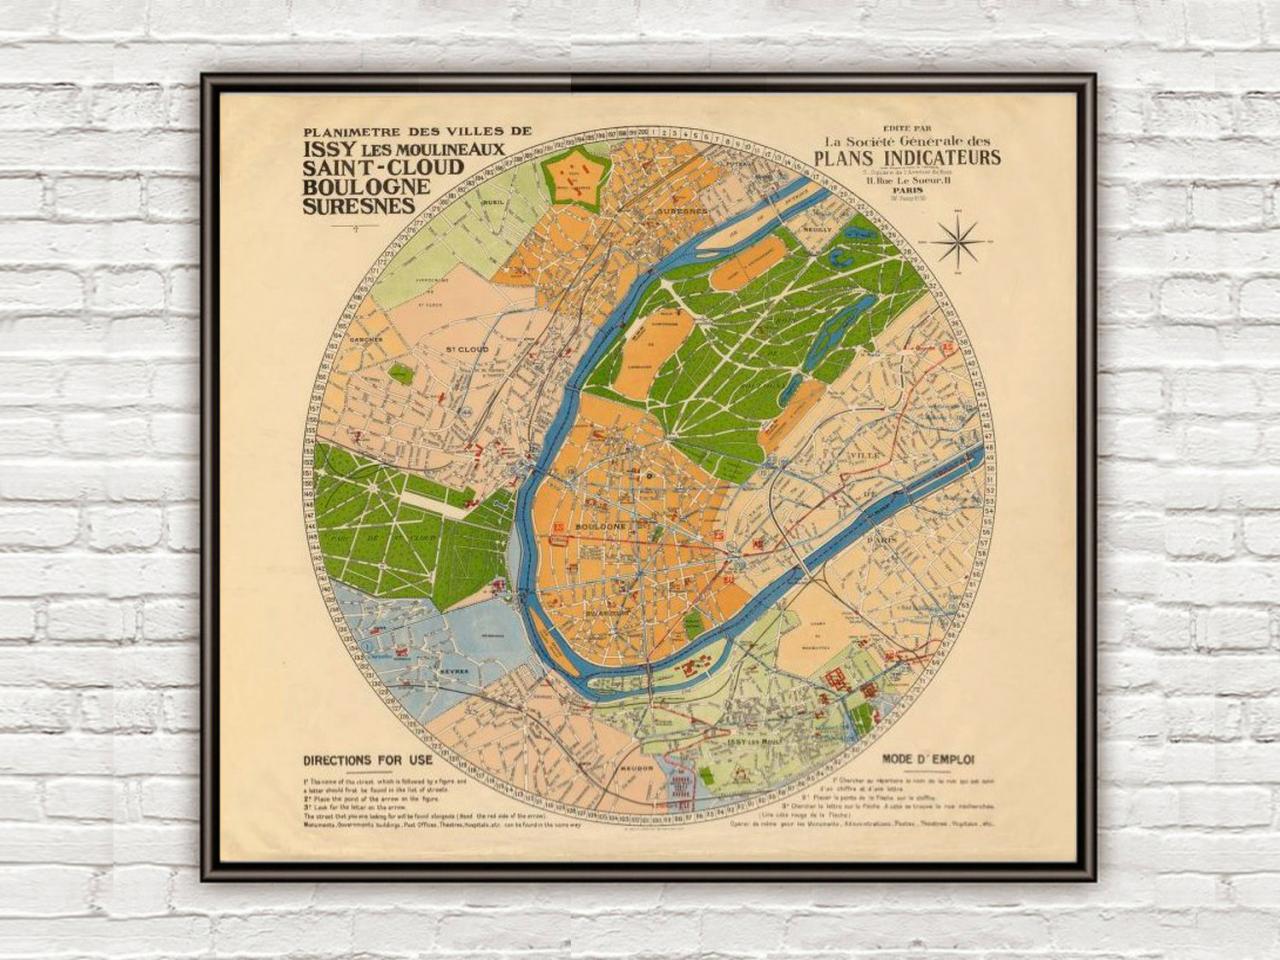 Old Map Of Suresnes, Saint-cloud, Boulogne-billancourt, Issy-les-moulineaux 1930